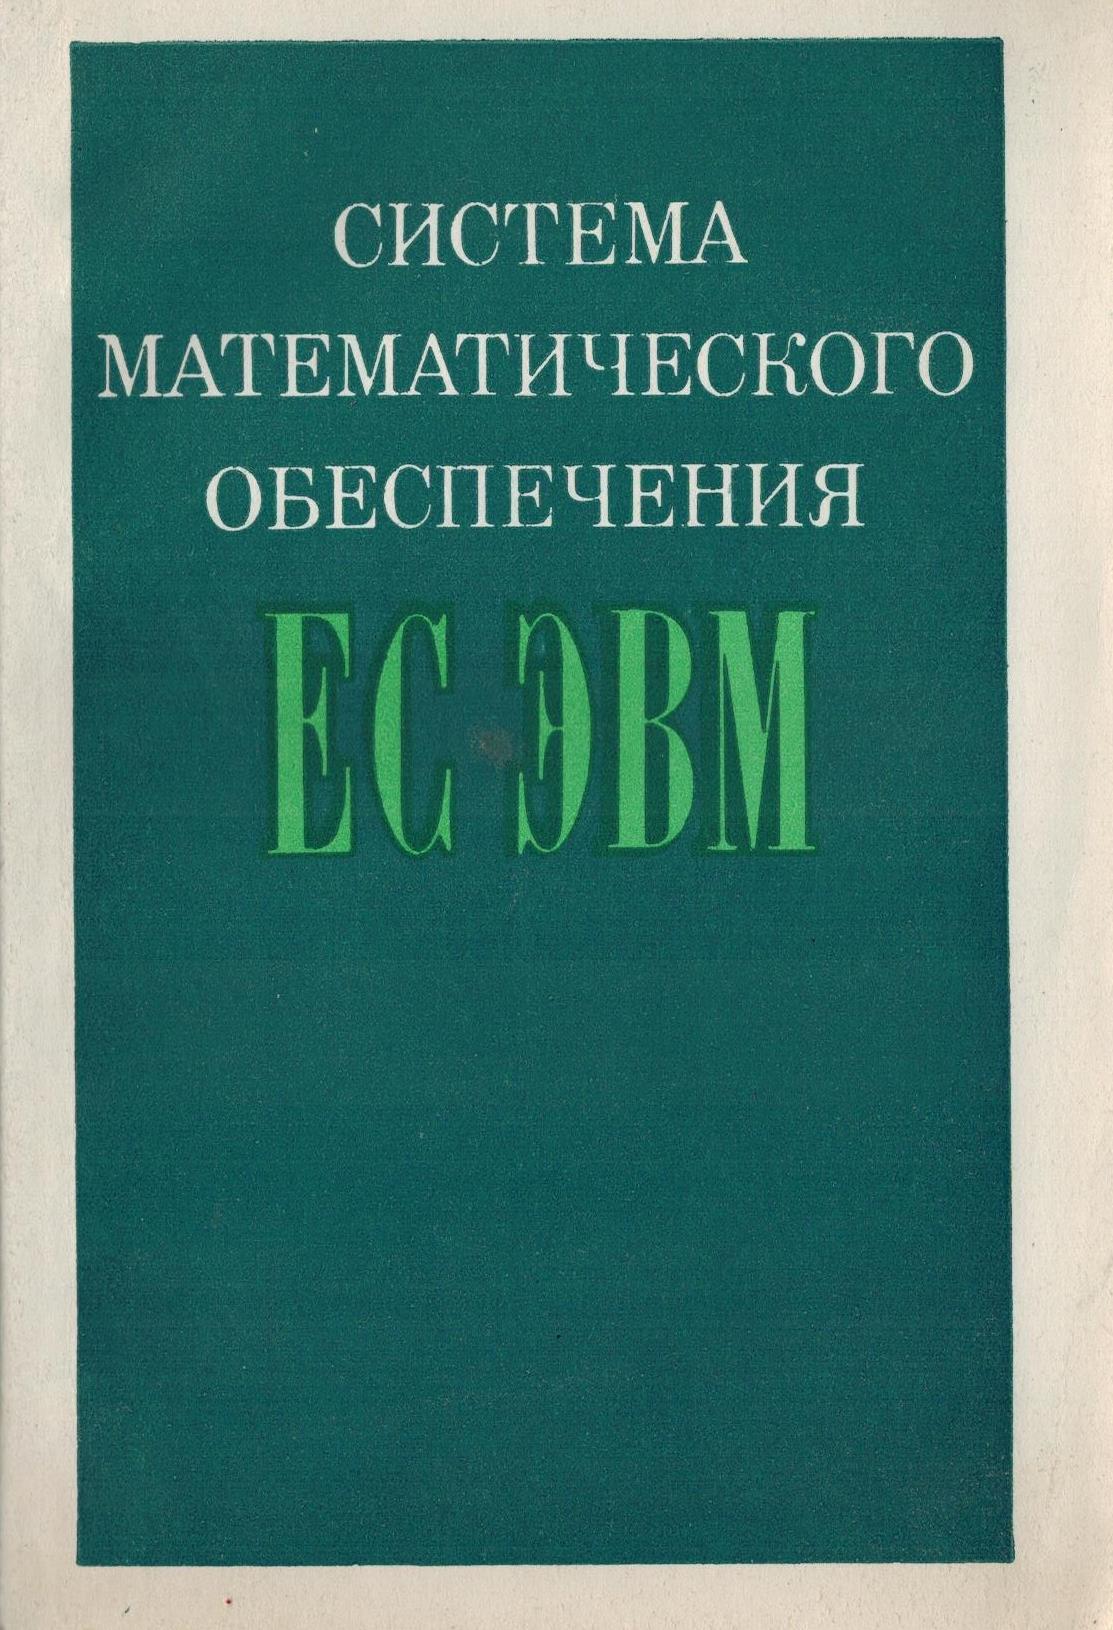 Эвм книга. Книга система. "Математическое обеспечение ЕС ЭВМ". Компьютерные математические системы книга.